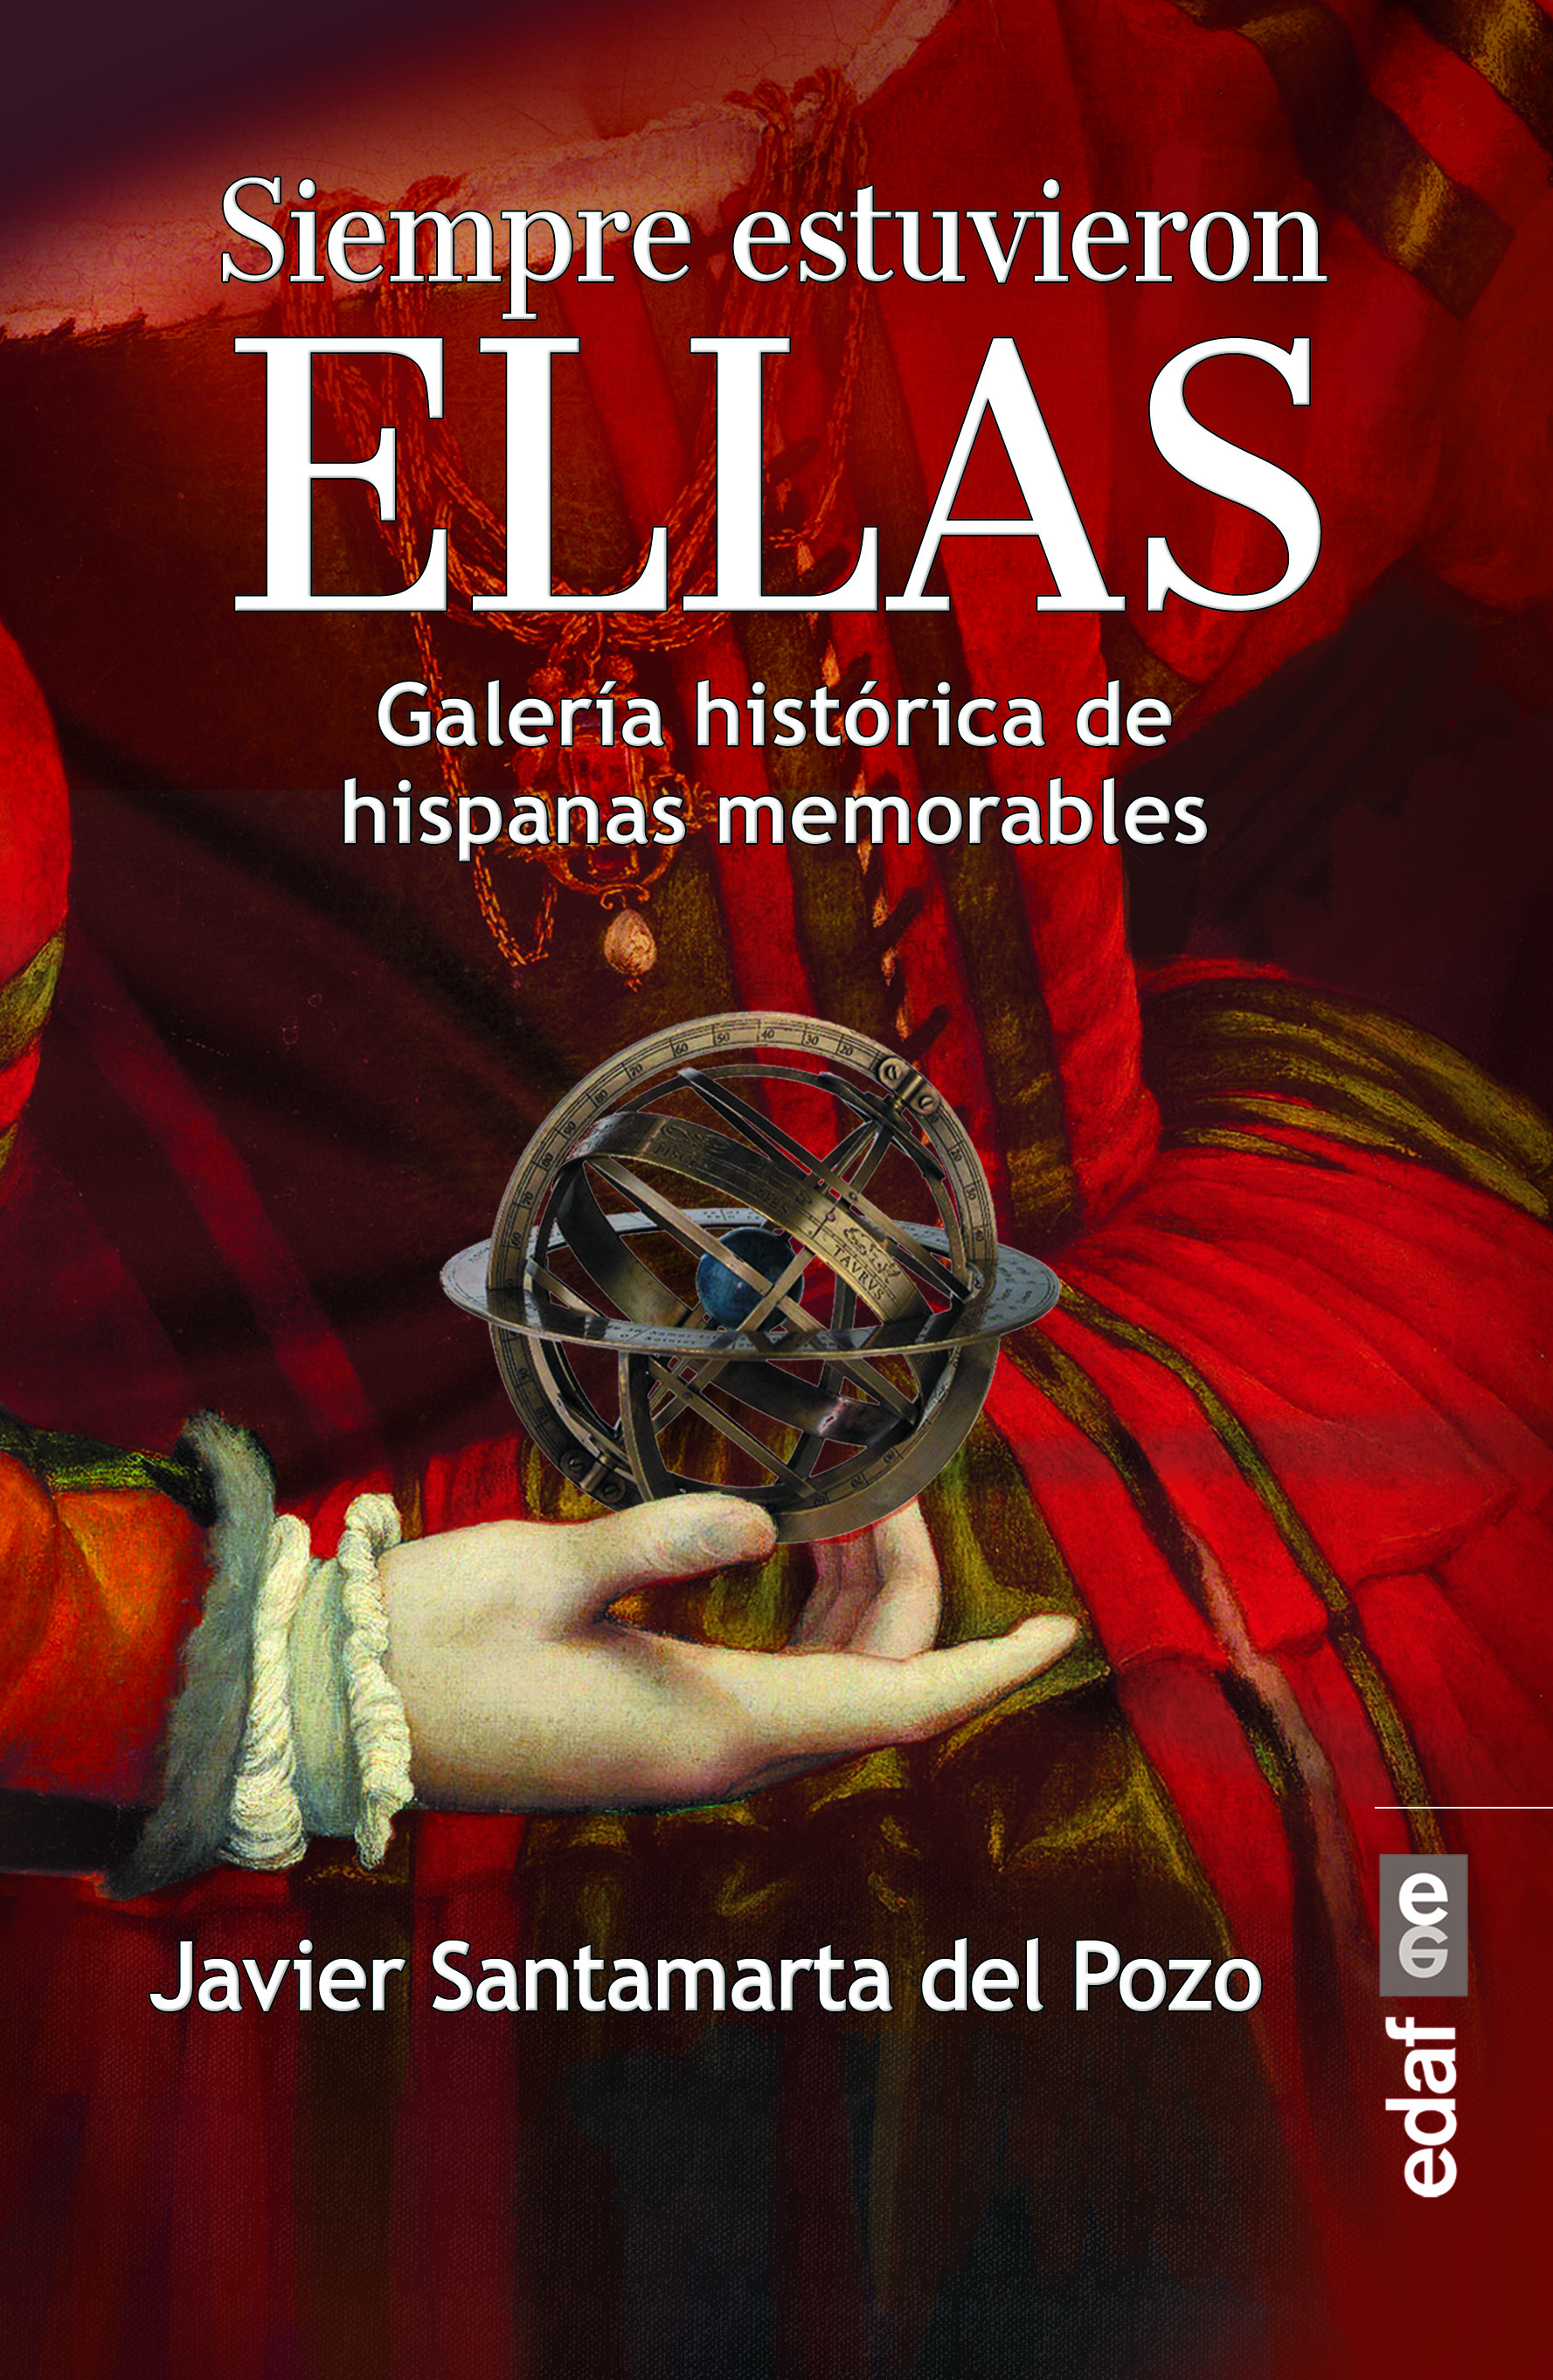 Siempre estuvieron ellas «Galería histórica de hispanas memorables» (9788441438927)